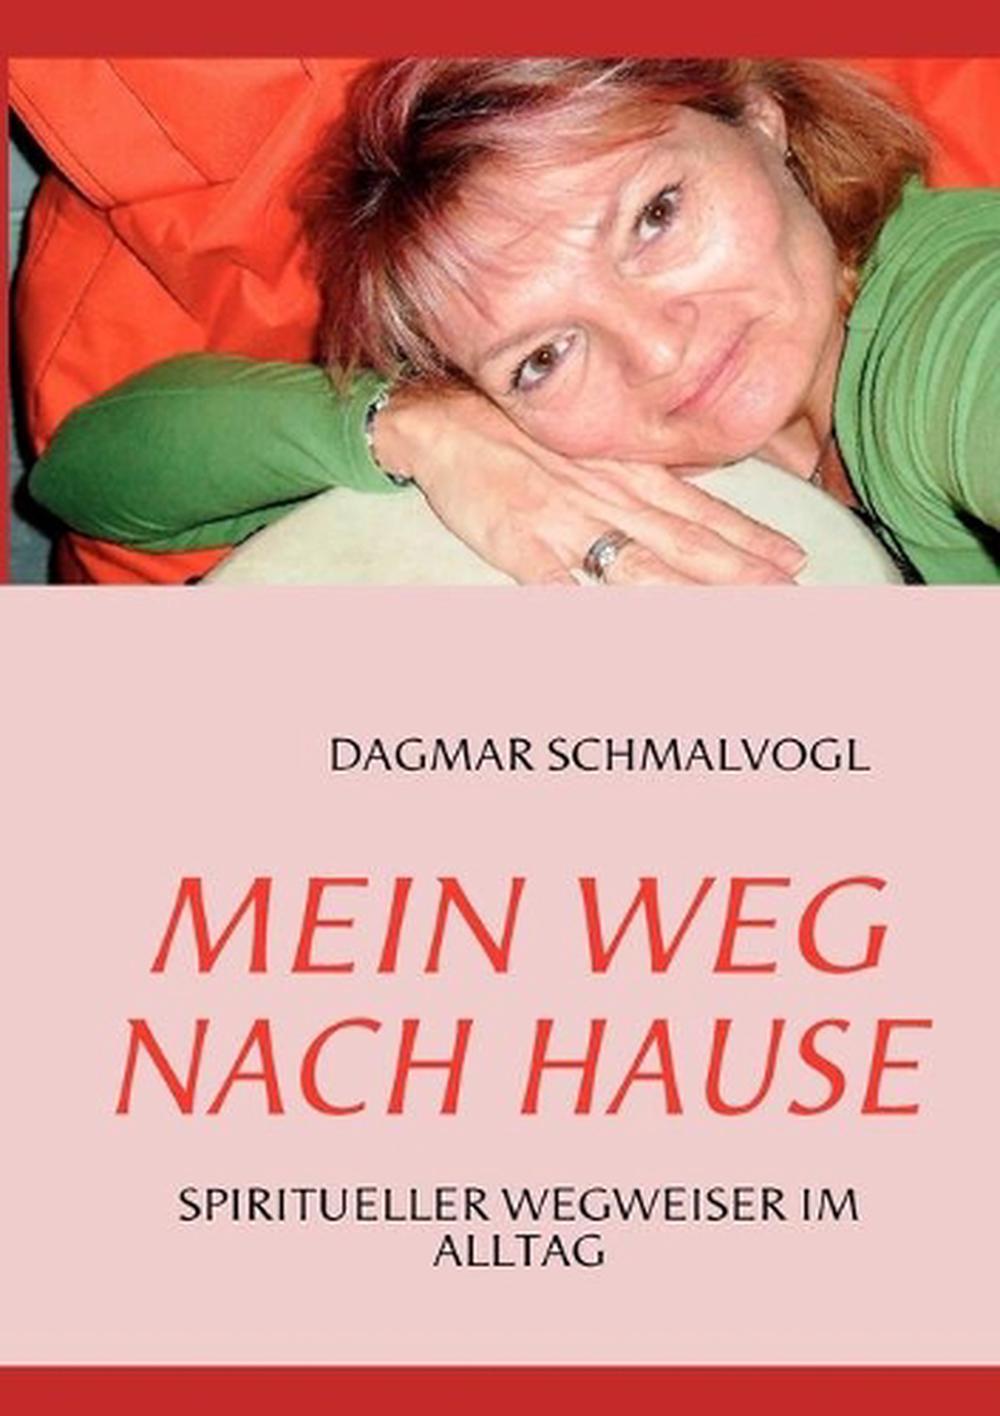 Mein Weg Nach Hause by Dagmar Schmalvogl (German